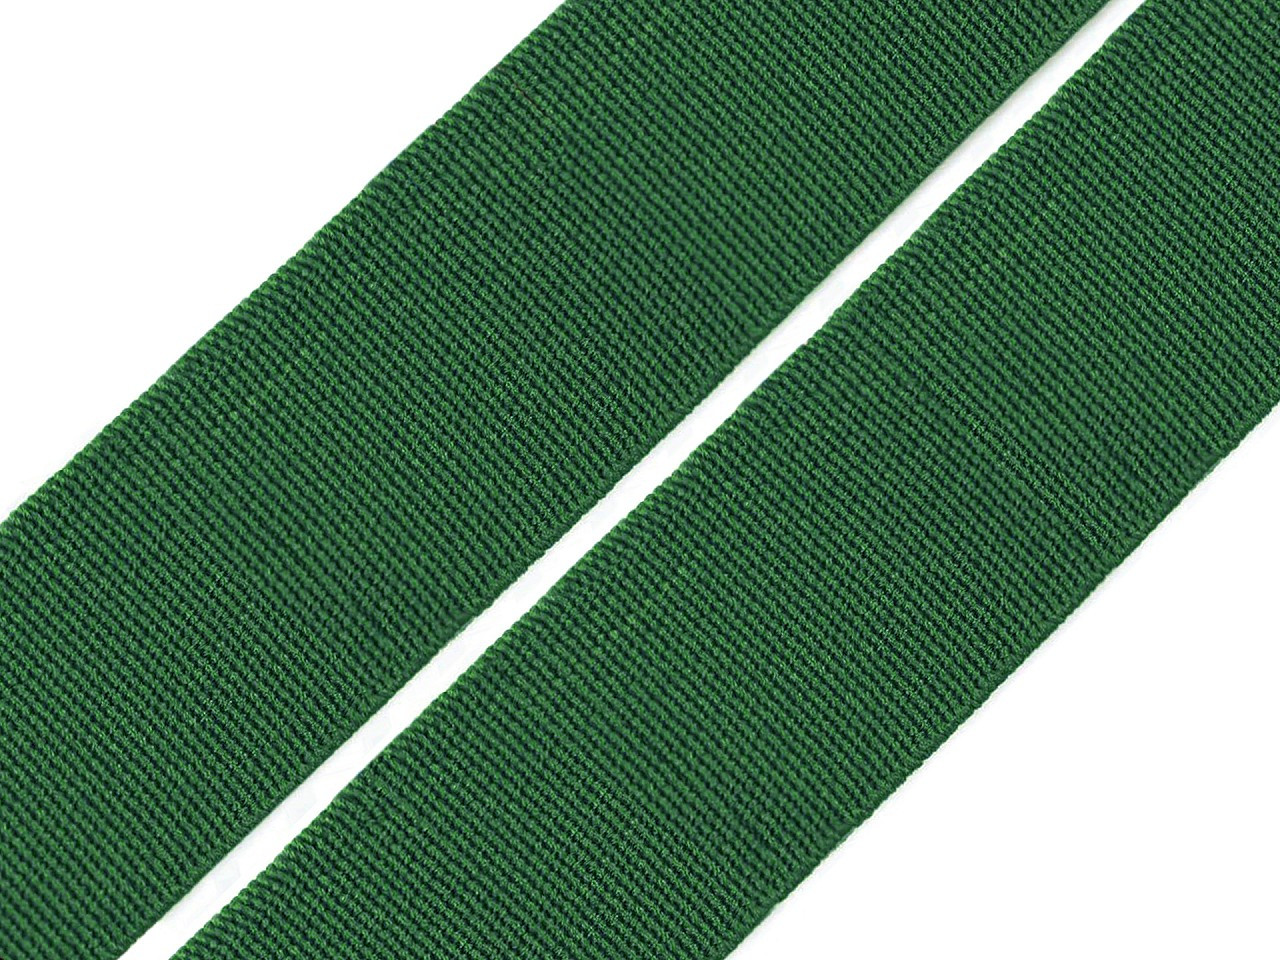 Pruženka hladká šíře 20 mm tkaná barevná, barva 4803 zelená tmavá